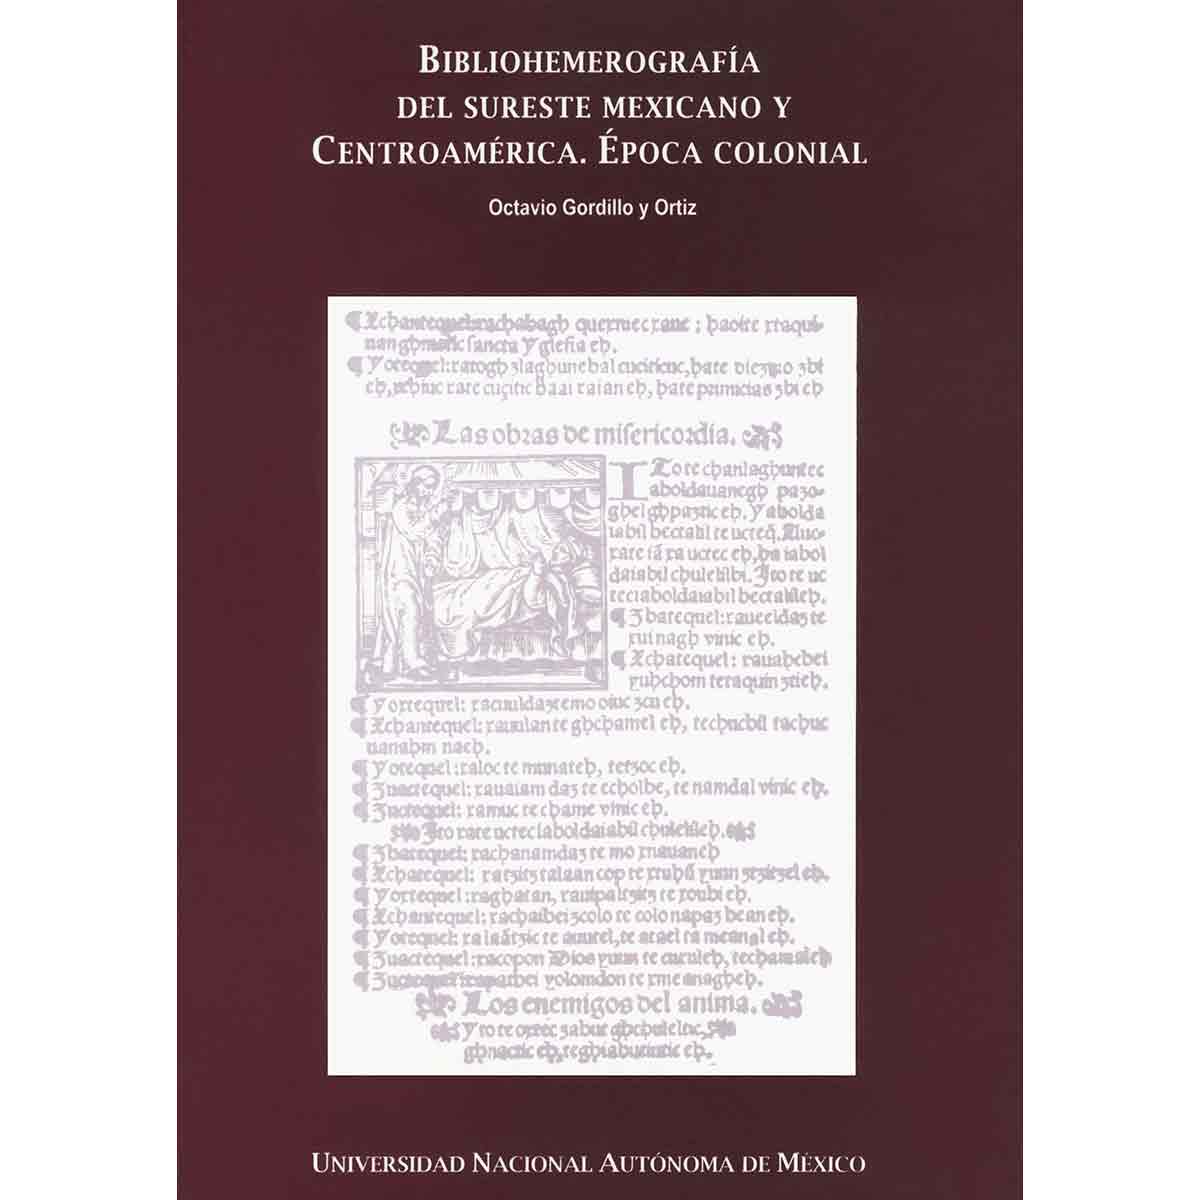 BIBLIOHEMEROGRAFÍA DEL SURESTE MEXICANO Y CENTROAMÉRICA. ÉPOCA COLONIAL